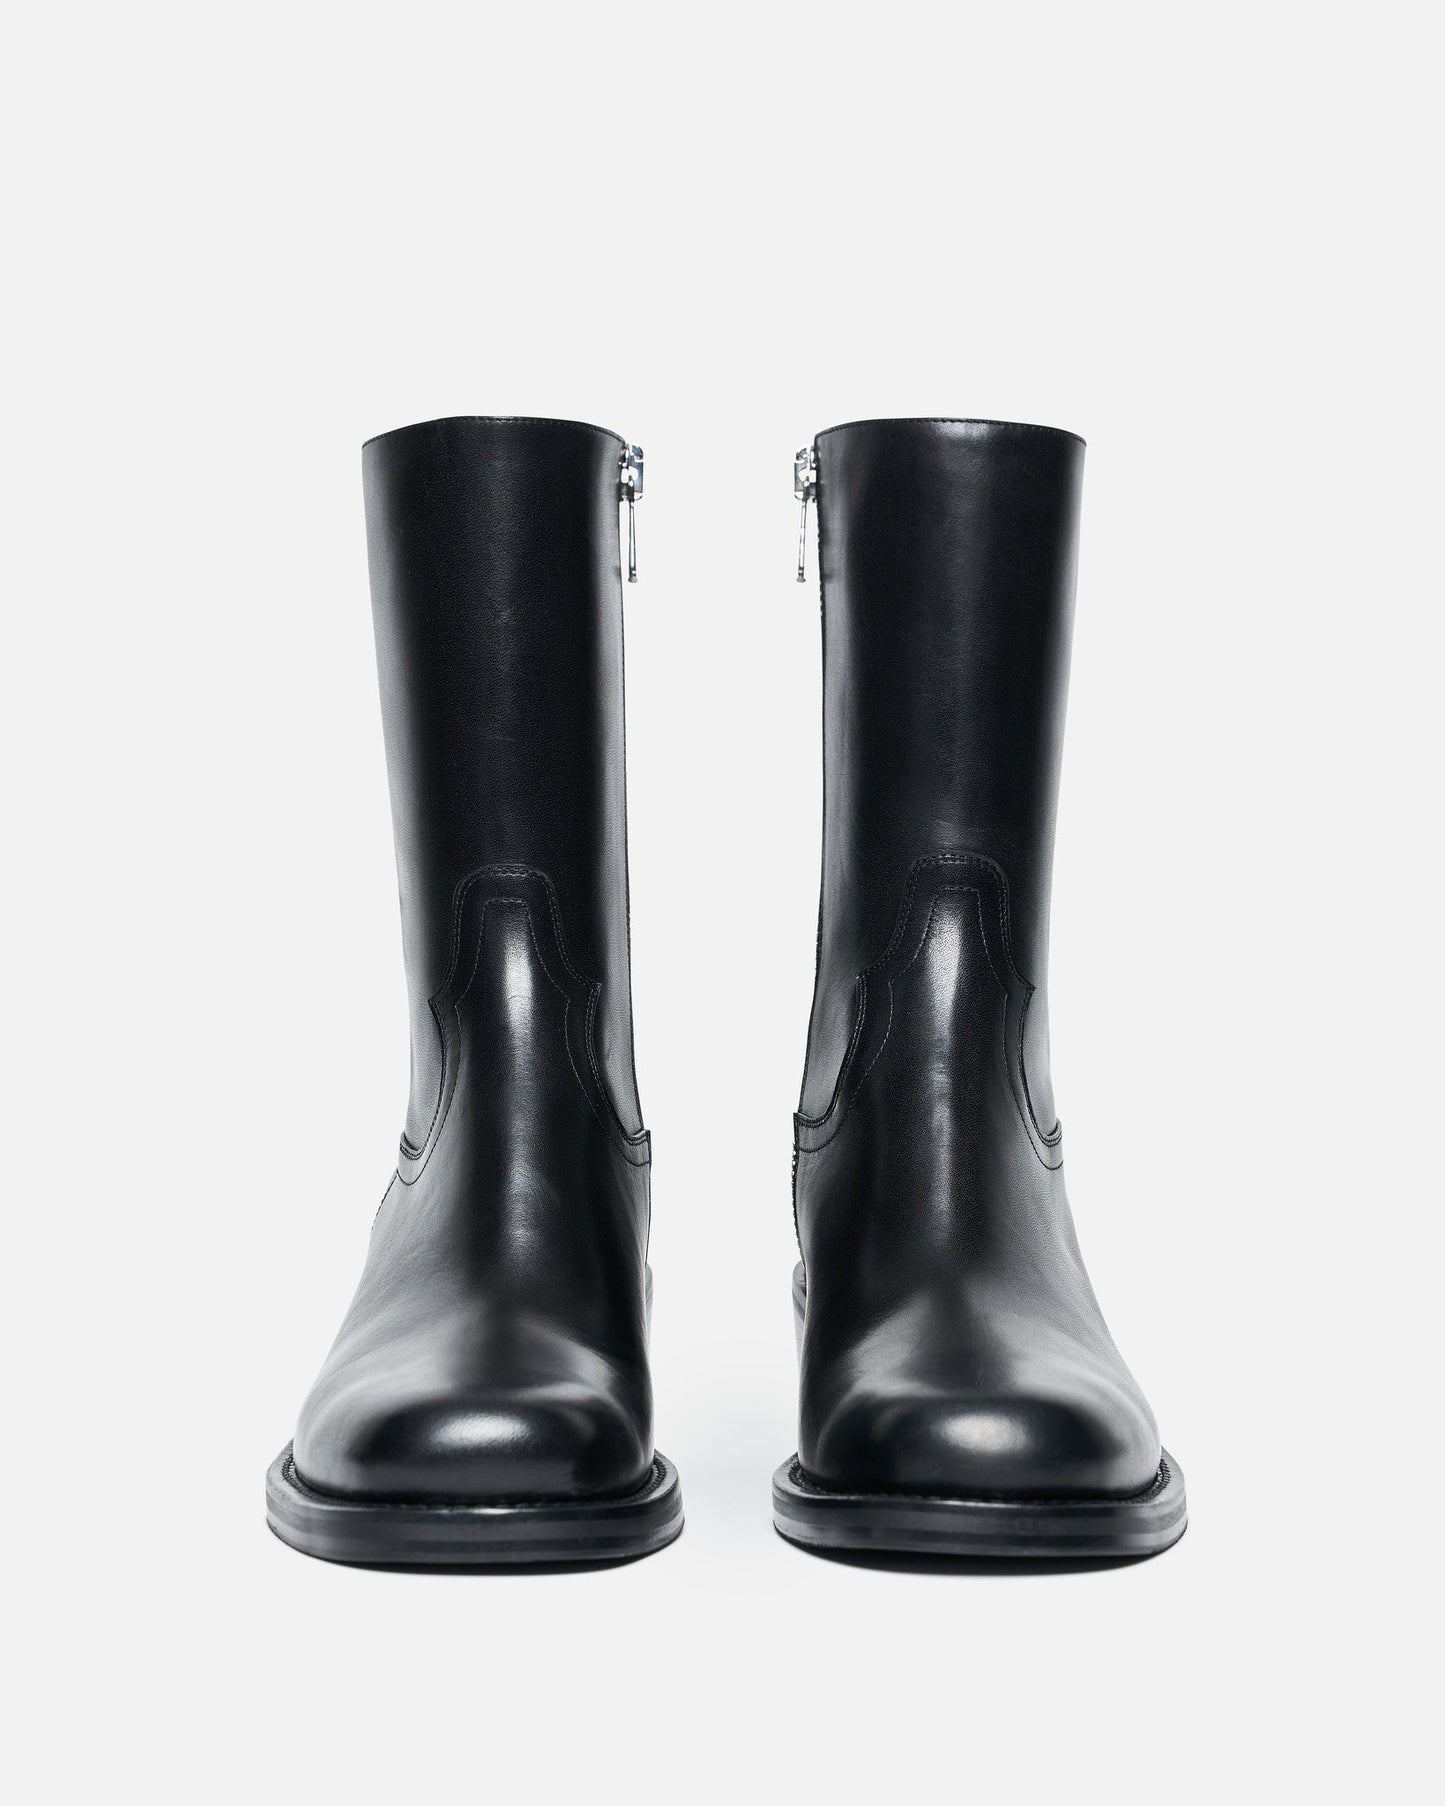 Dries Van Noten Men's Boots Square Toe Boots in Black